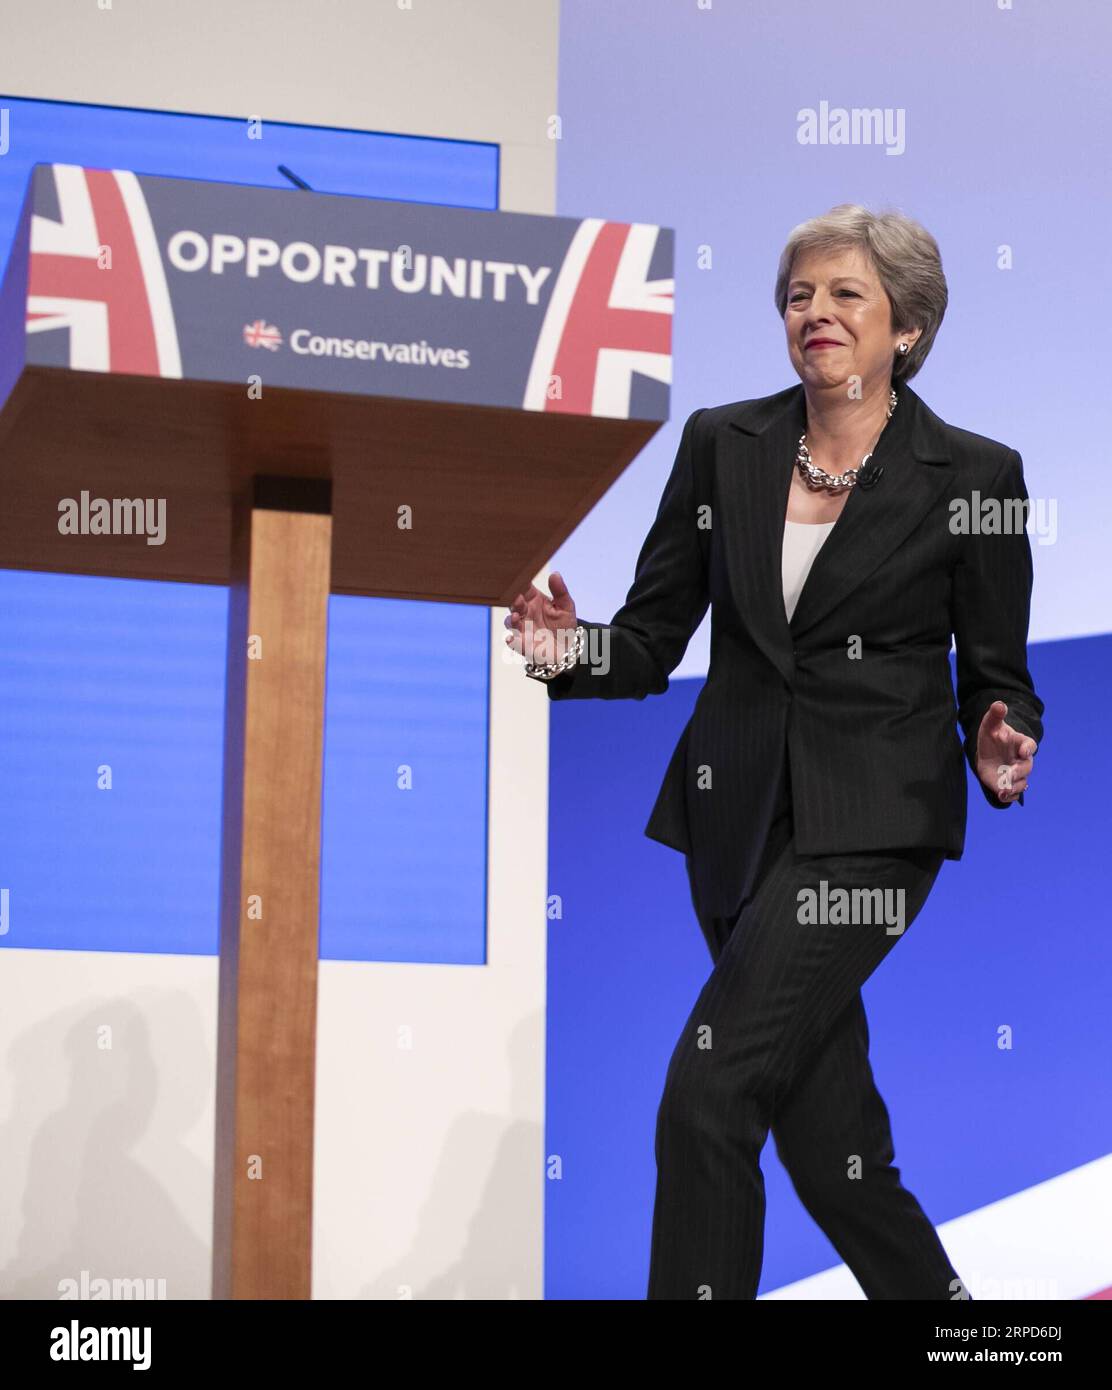 (190724) -- LONDRA, 24 luglio 2019 -- la foto del file scattata il 3 ottobre 2018 mostra il primo ministro britannico Theresa May danzare sul palco per tenere un discorso durante la conferenza annuale del Partito Conservatore 2018 a Birmingham, in Gran Bretagna. Il neoeletto leader del partito conservatore Boris Johnson si è insediato come primo ministro britannico mercoledì, in mezzo alle crescenti incertezze della Brexit. L'ultimo sviluppo avvenne dopo che Theresa May si dimise formalmente da leader del paese e Johnson fu invitato dalla regina a formare il governo. BRITAIN-LONDON-THERESA MAY-RESIGN HanxYan PUBLICATIONxNOTxINxCHN Foto Stock